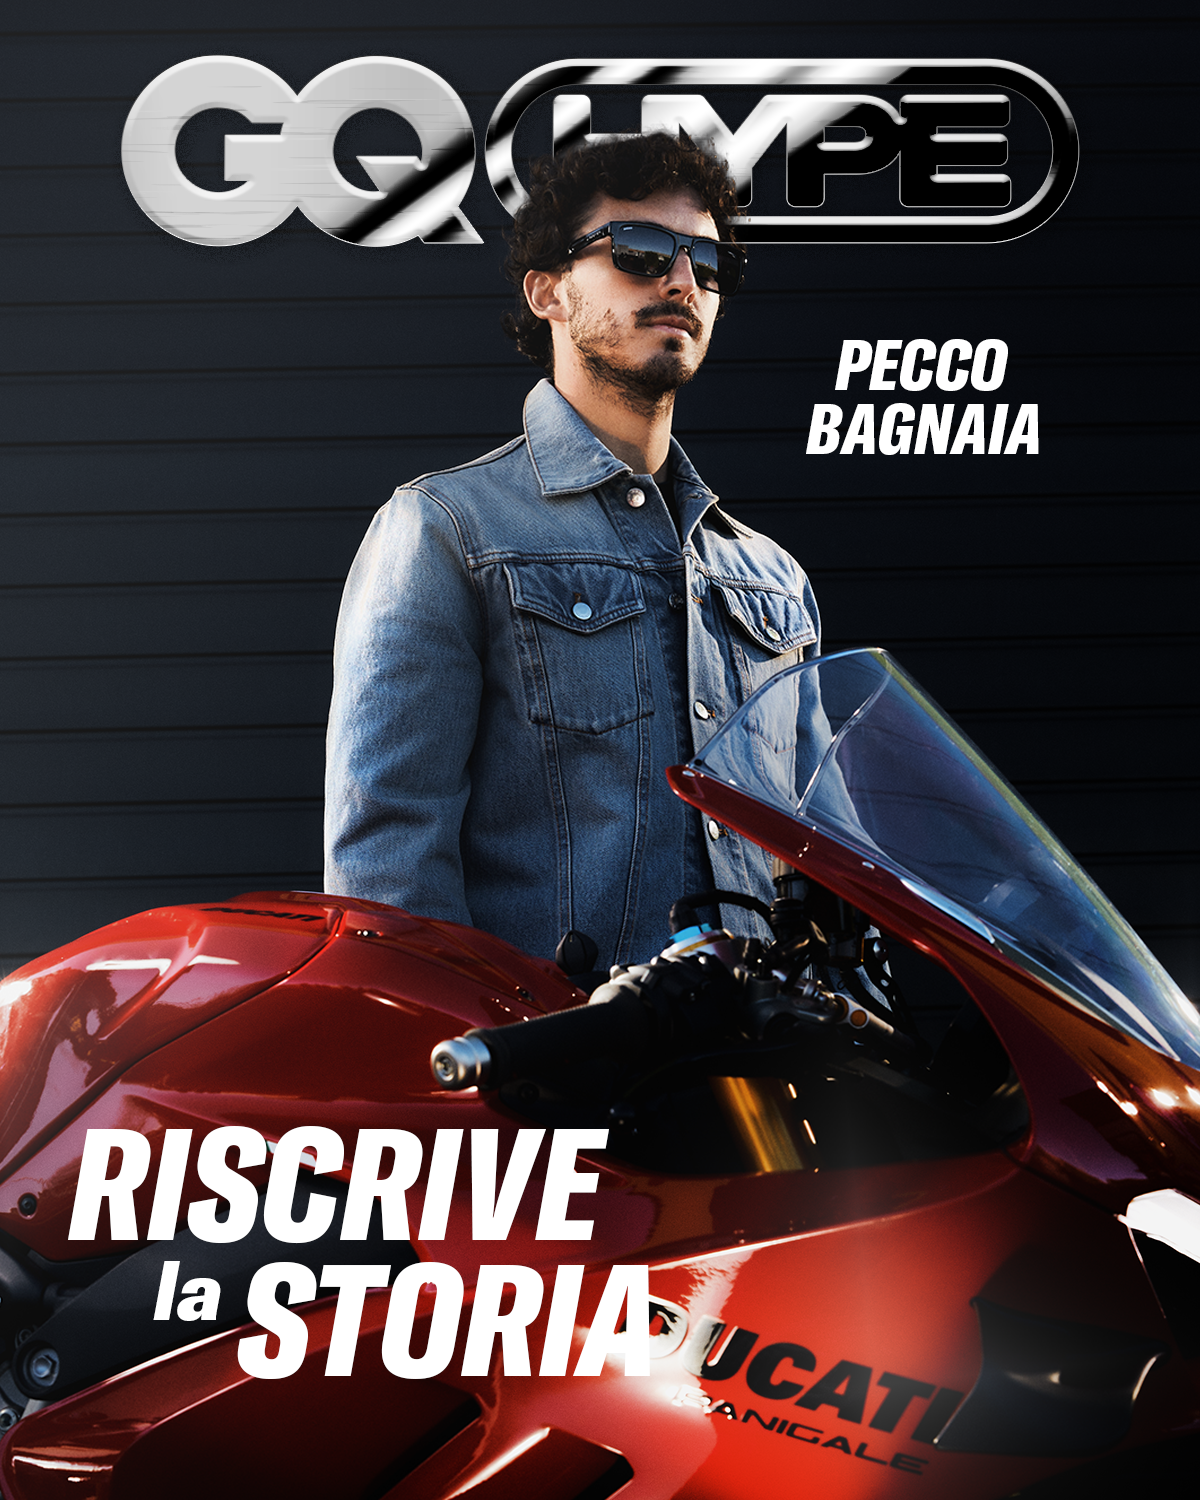 Carrera Ducati x GQ Italia